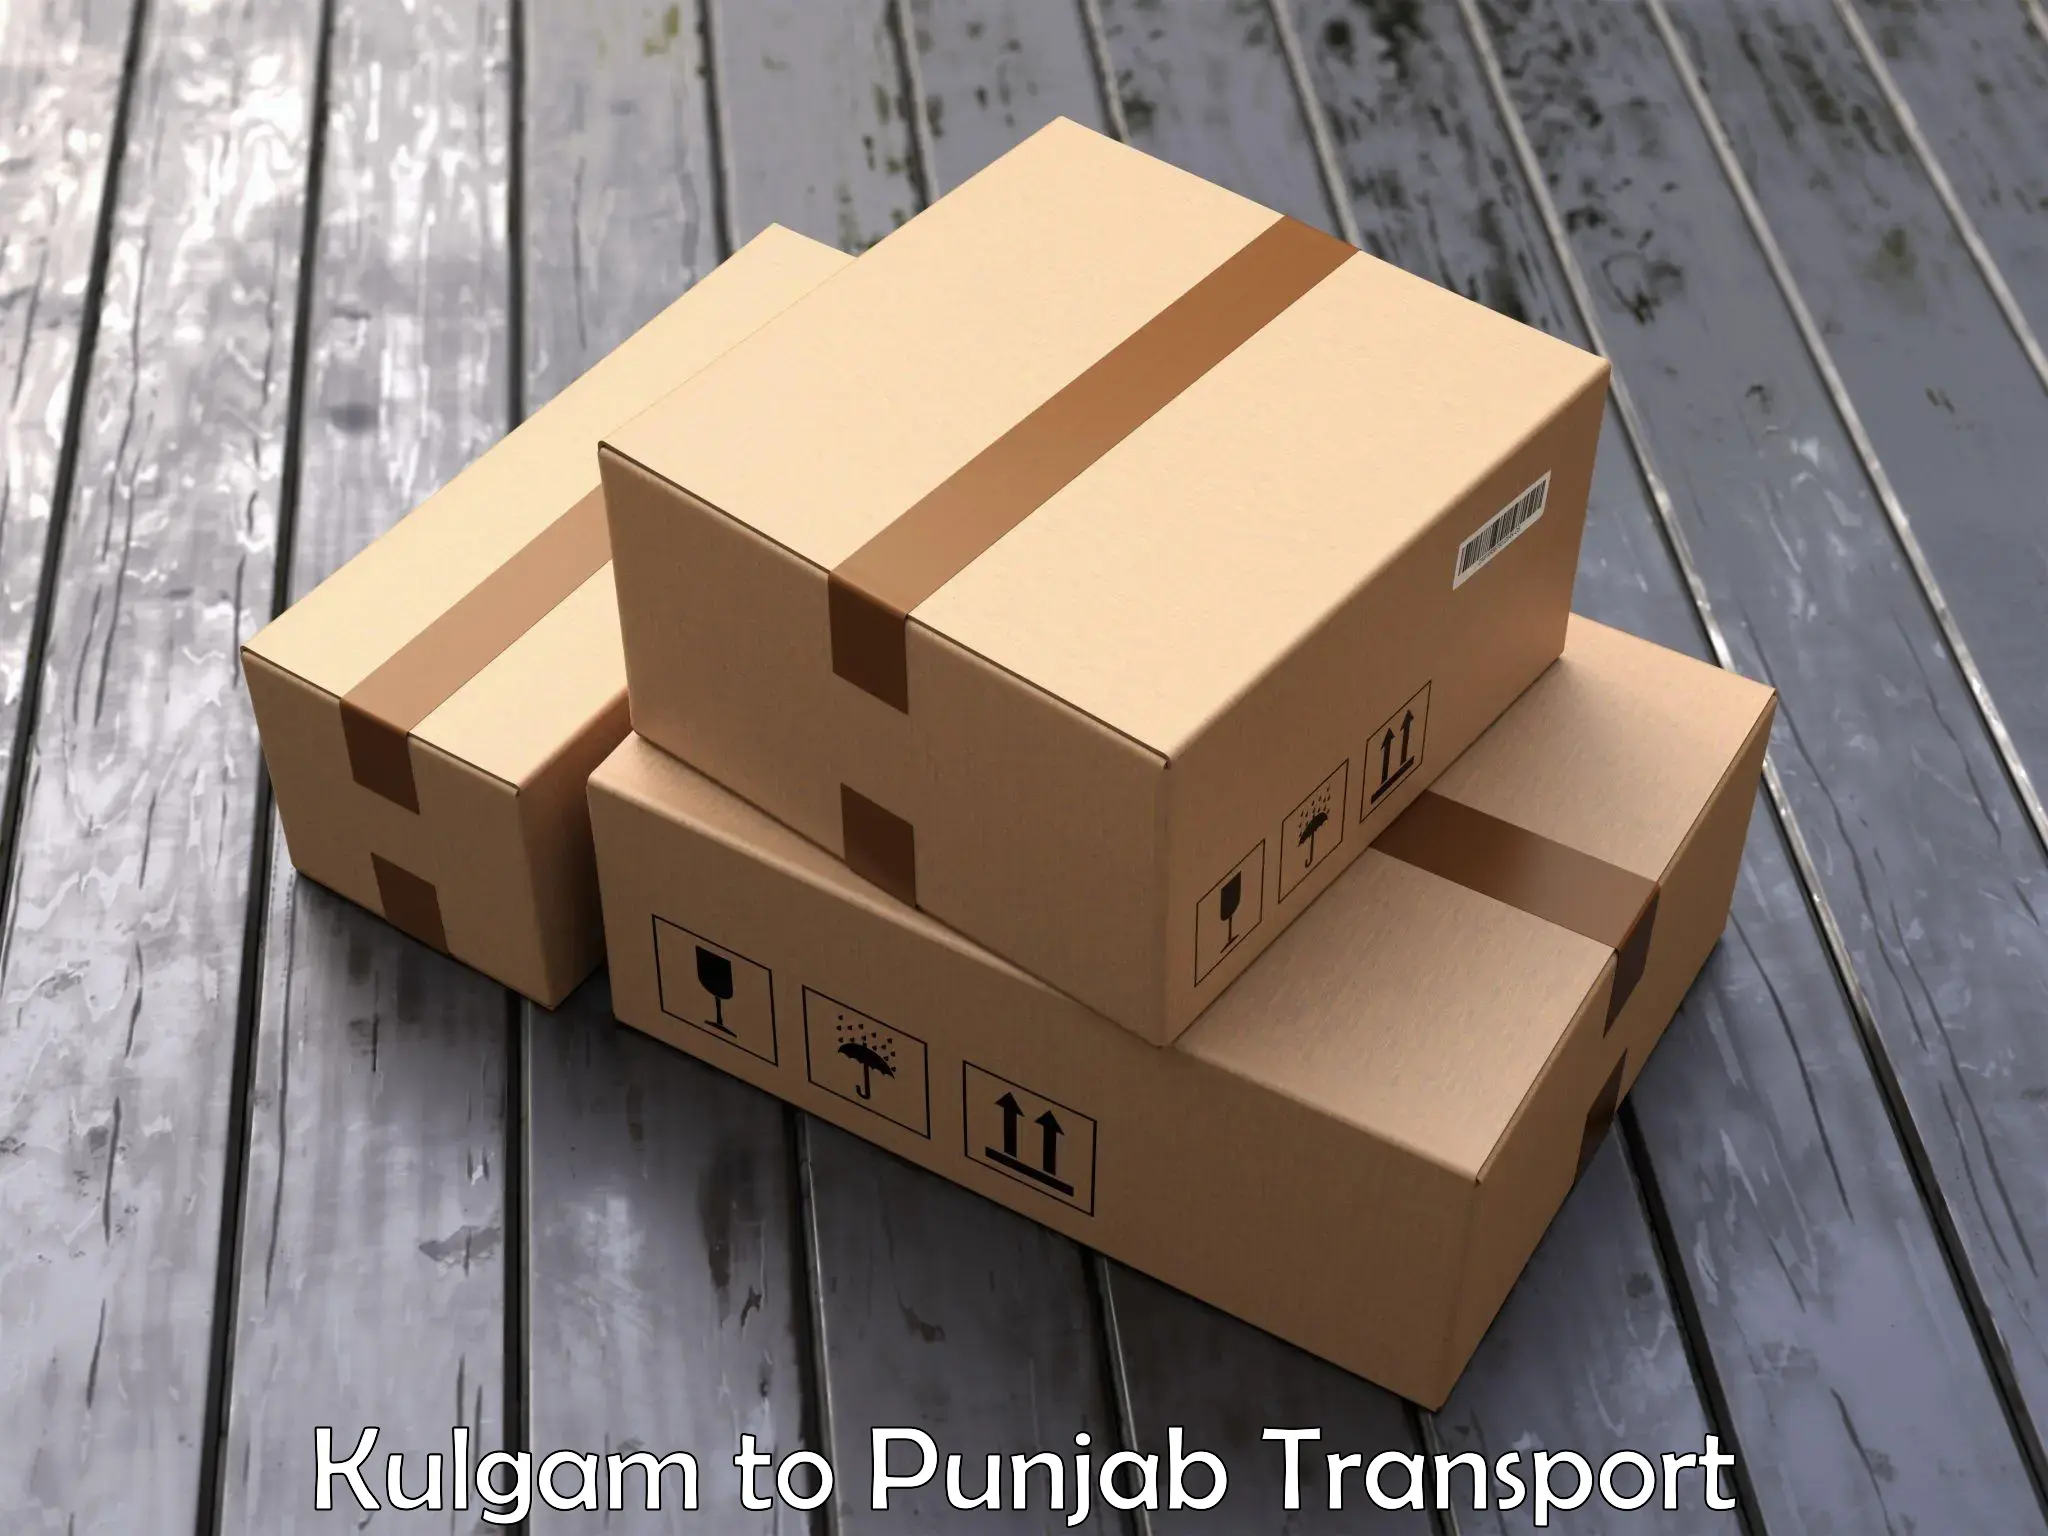 Scooty transport charges Kulgam to Punjab